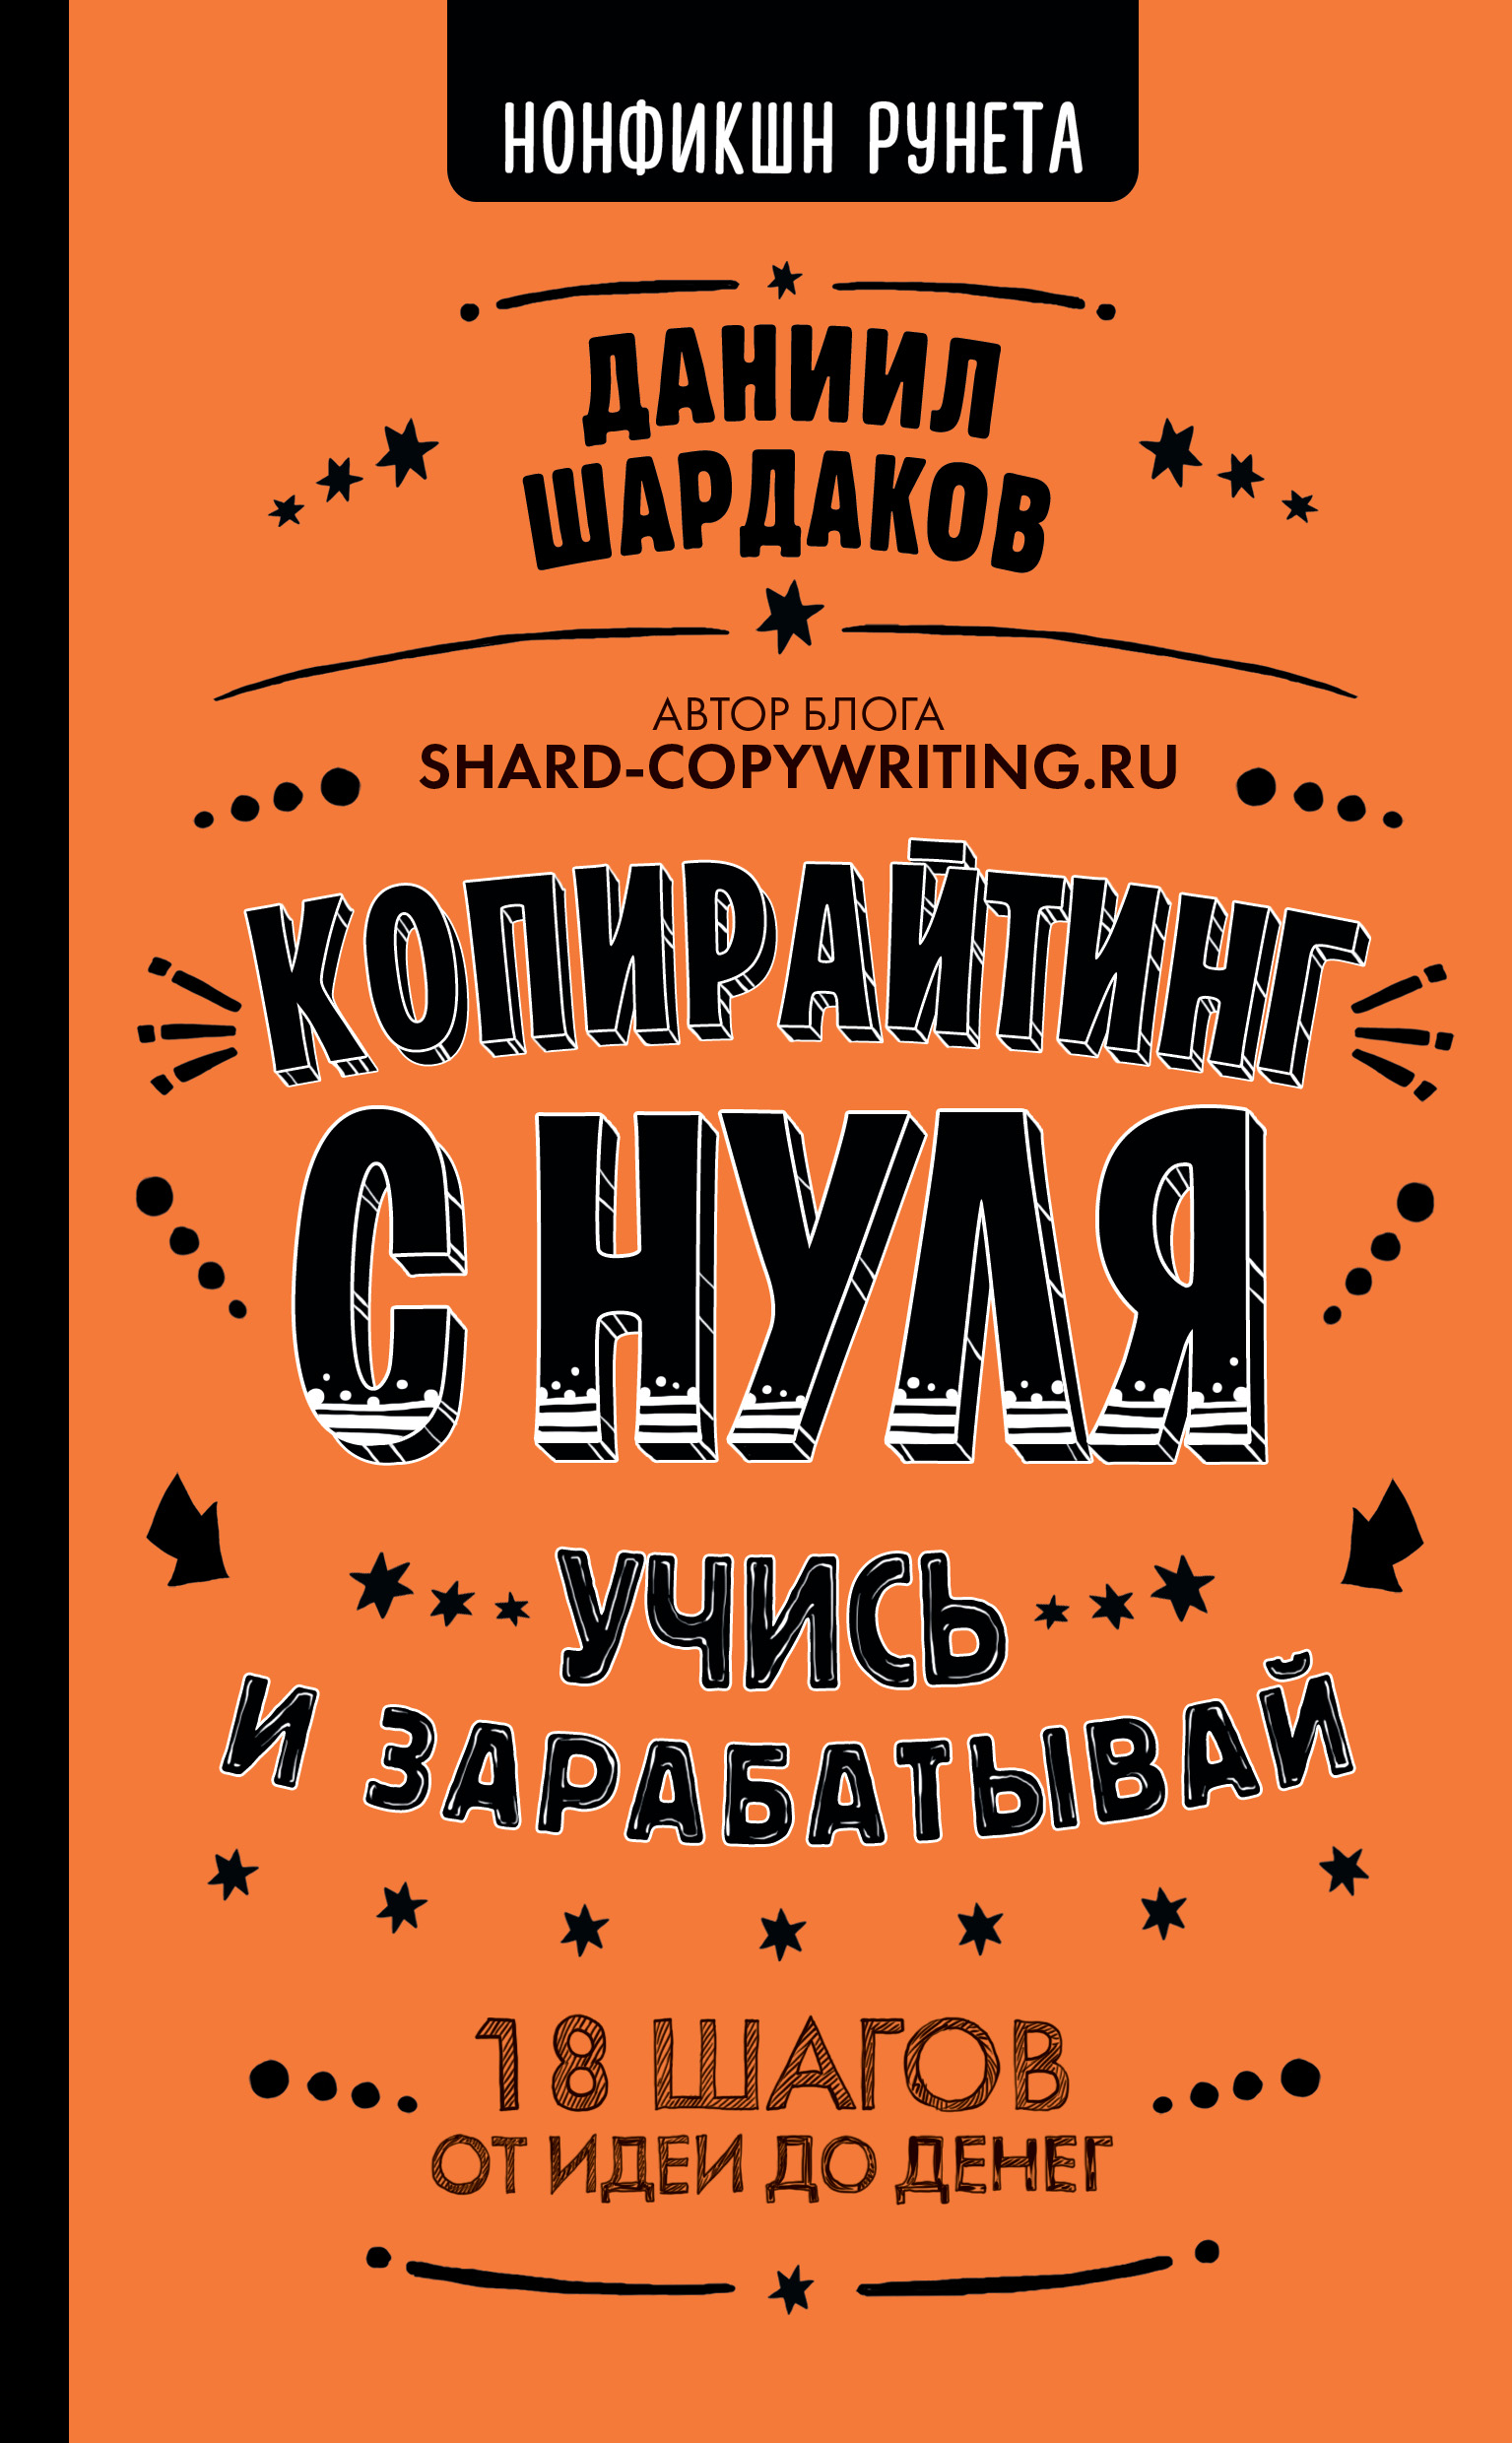 Книга Нонфикшн Рунета Копирайтинг с нуля созданная Даниил Шардаков может относится к жанру копирайтинг, привлечение клиентов, реклама. Стоимость электронной книги Копирайтинг с нуля с идентификатором 48671454 составляет 319.00 руб.